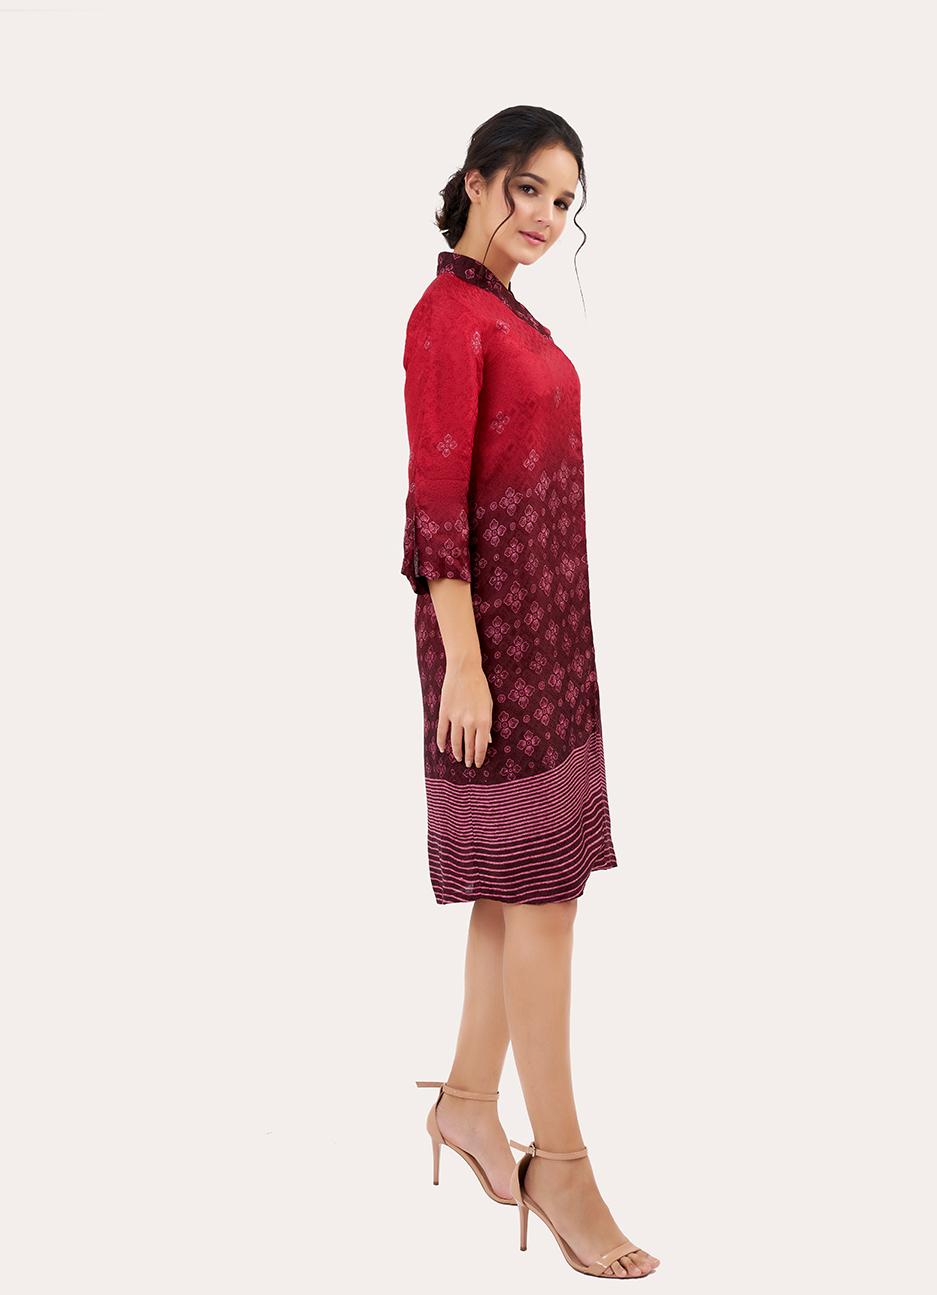 Long Sleeve Batik Dress